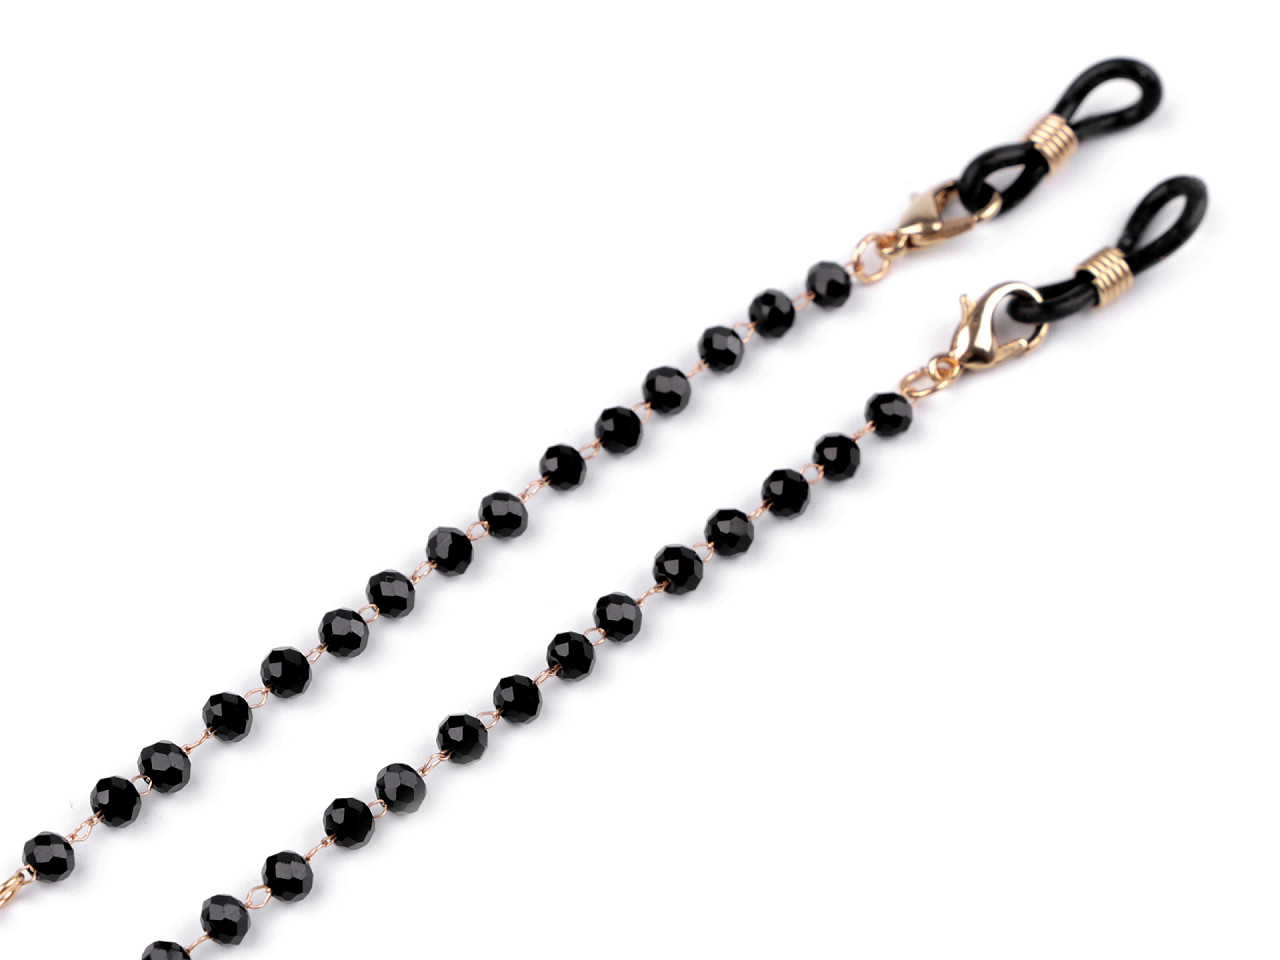 Brillenkette mit geschliffenen Perlen, schwarz, 1 Stk.